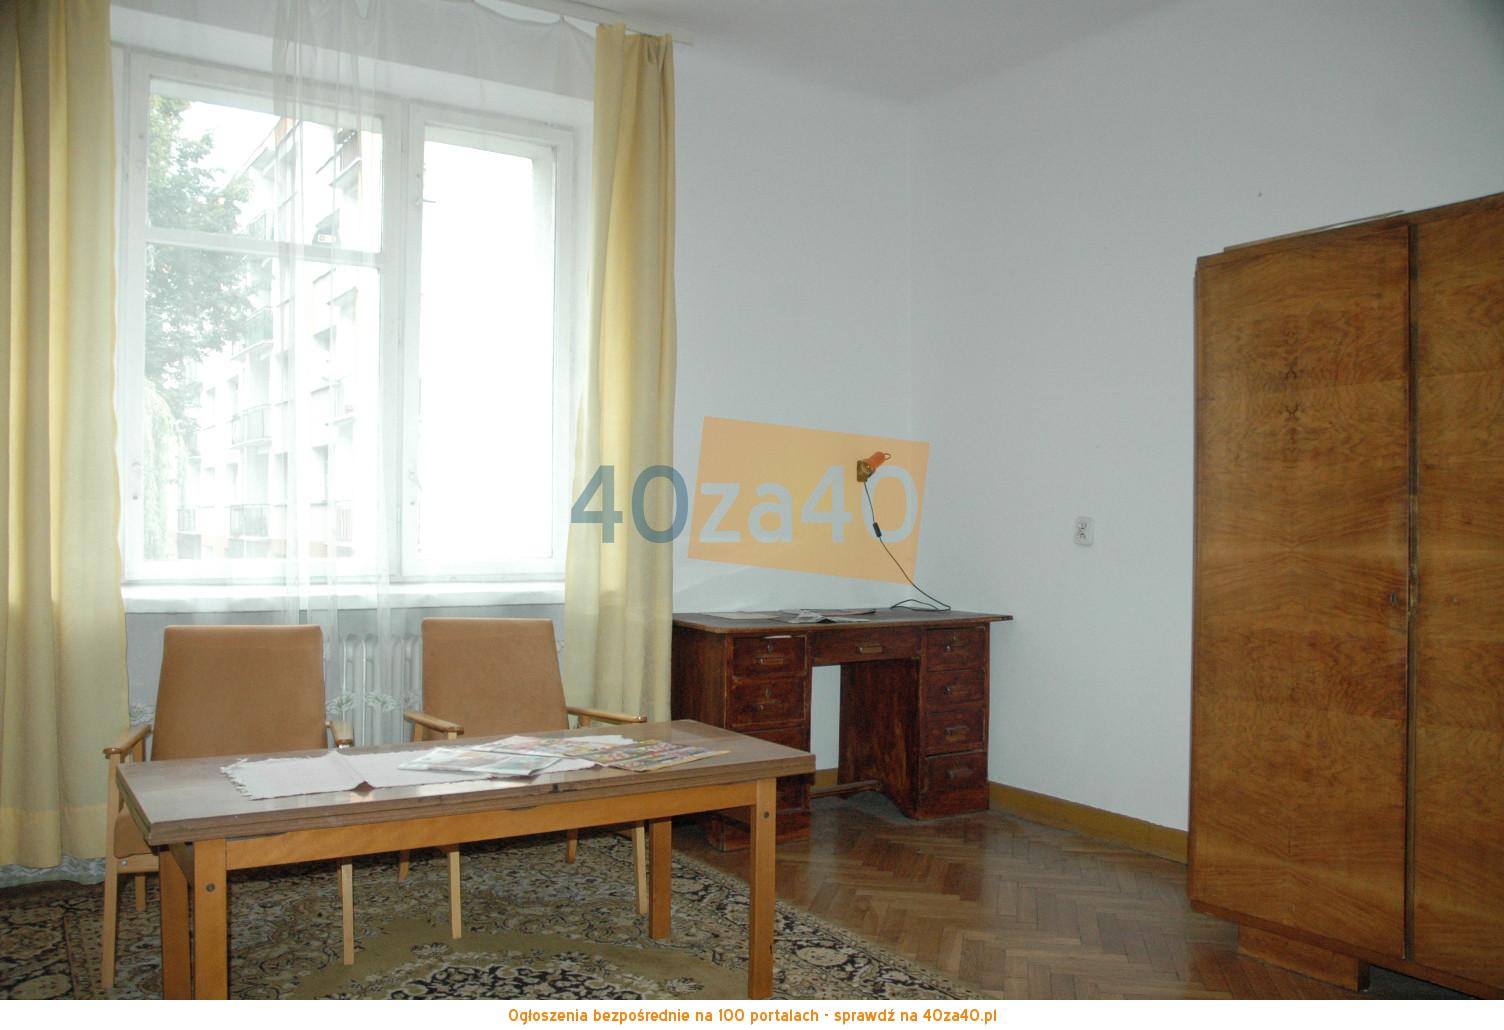 Mieszkanie do wynajęcia, pokoje: 2, cena: 500,00 PLN, Łódź, kontakt: 502271850